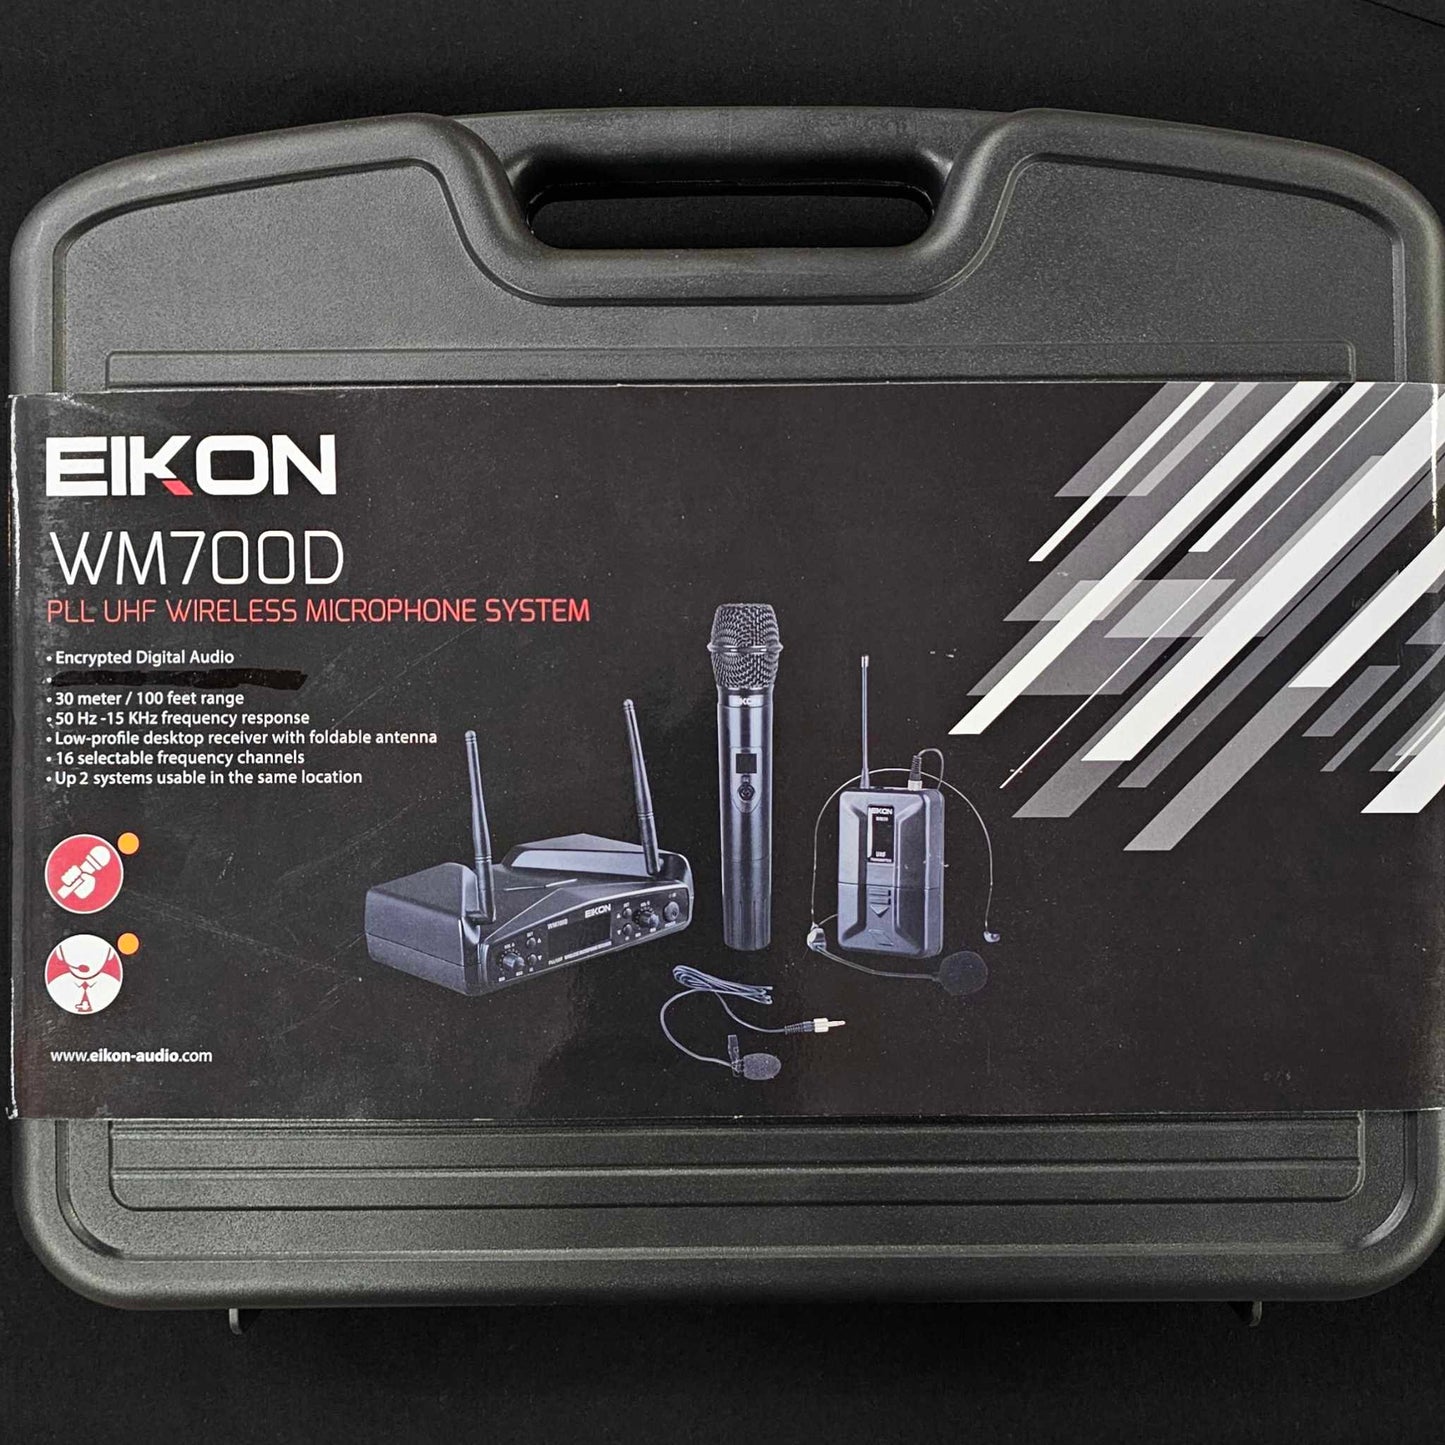 Eikon Wireless Microphone System